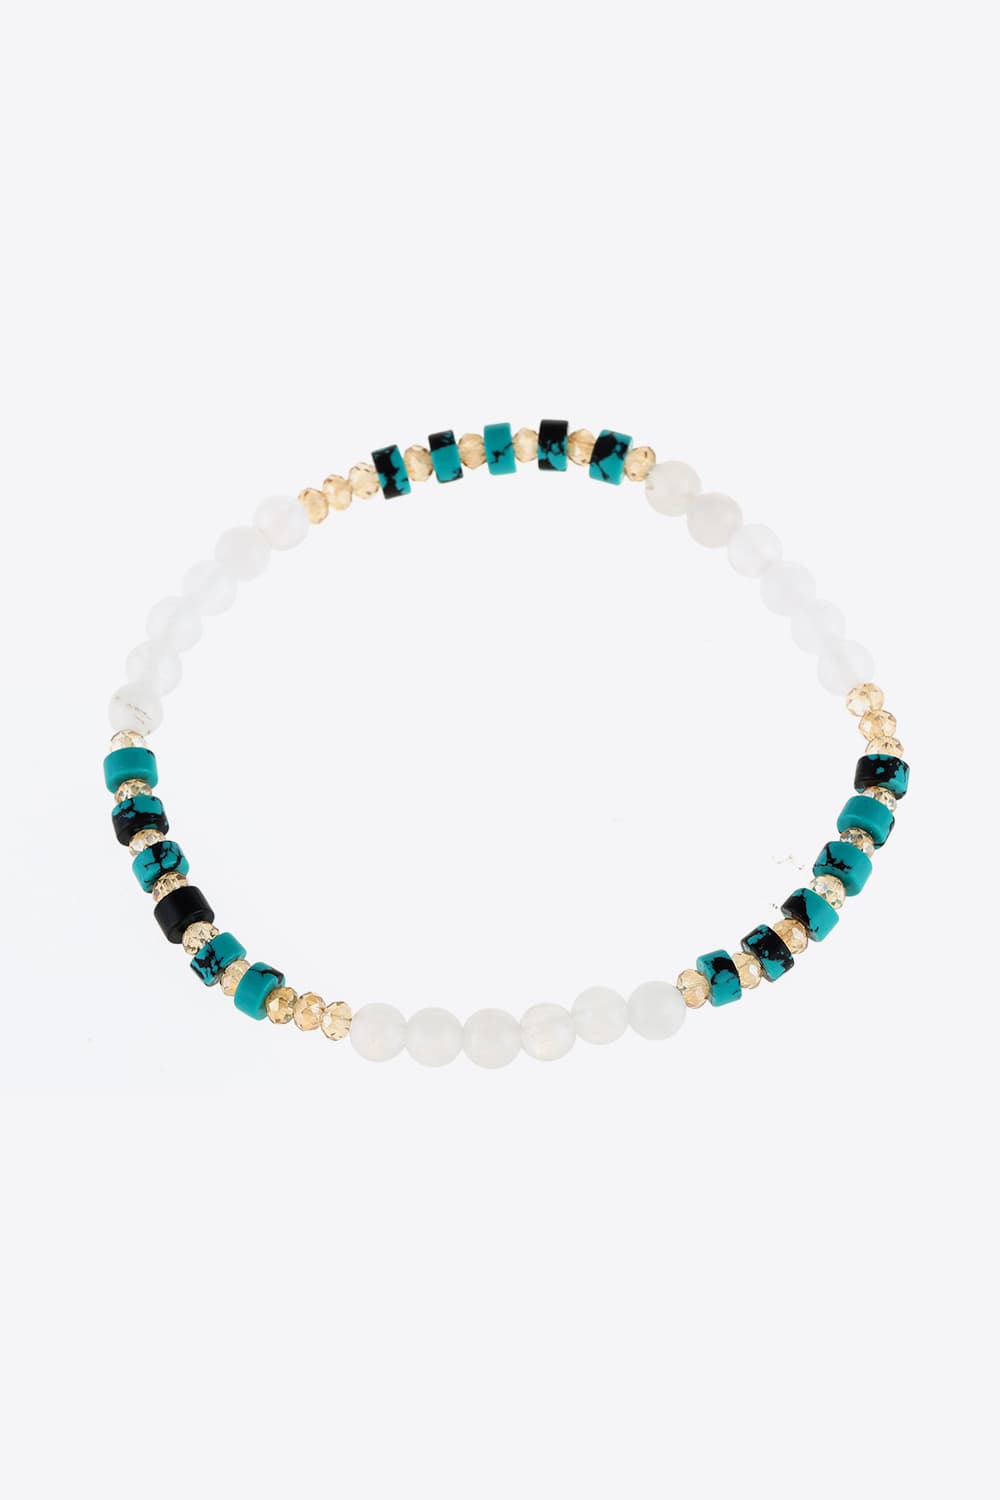 Crystal & Natural Stone Bracelet - Light Green / One Size - Women’s Jewelry - Bracelets - 3 - 2024